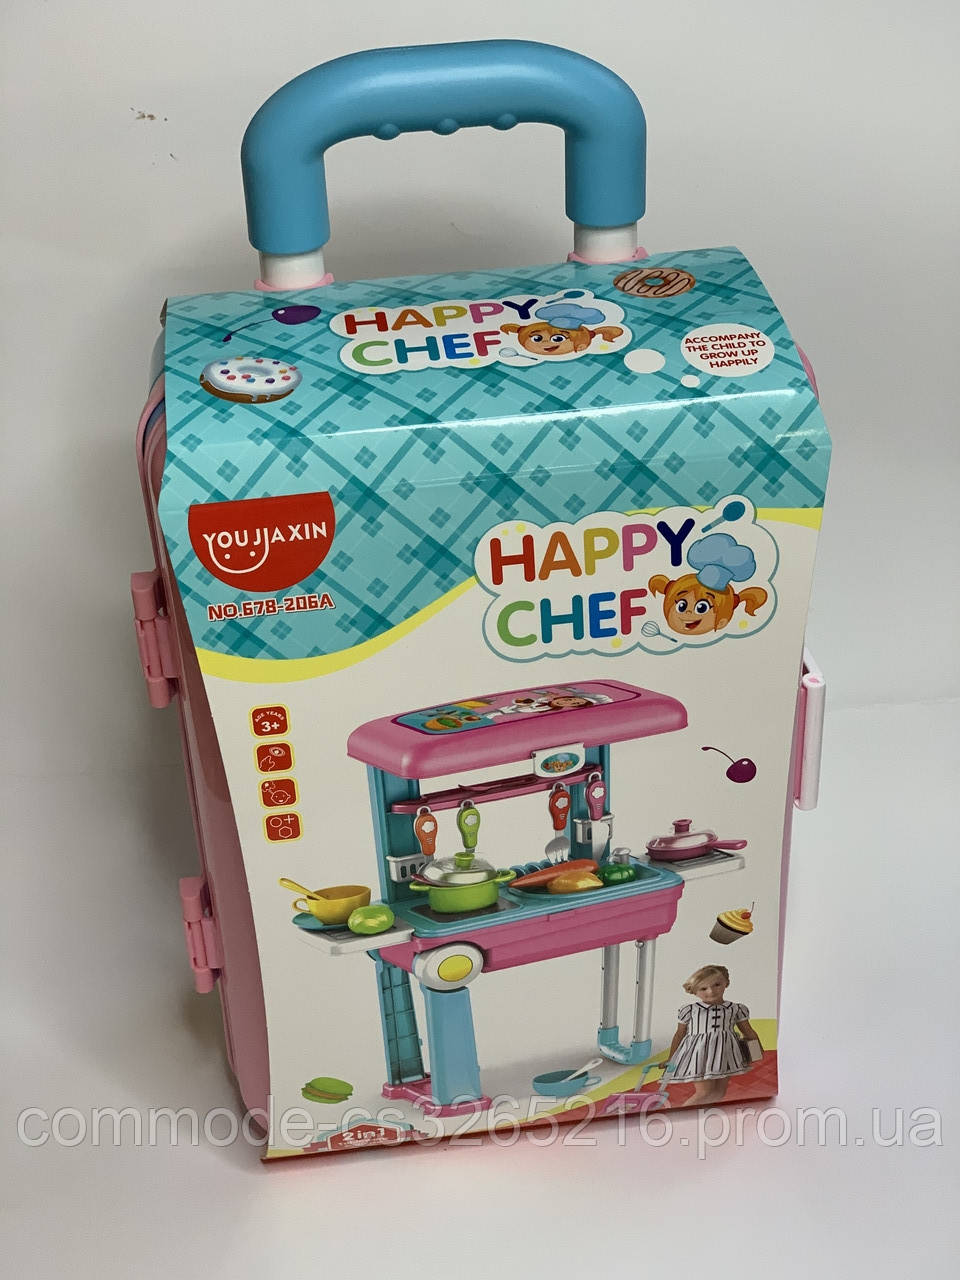 

Детский игрушечный набор чемоданчик-кухня с аксессуарами.